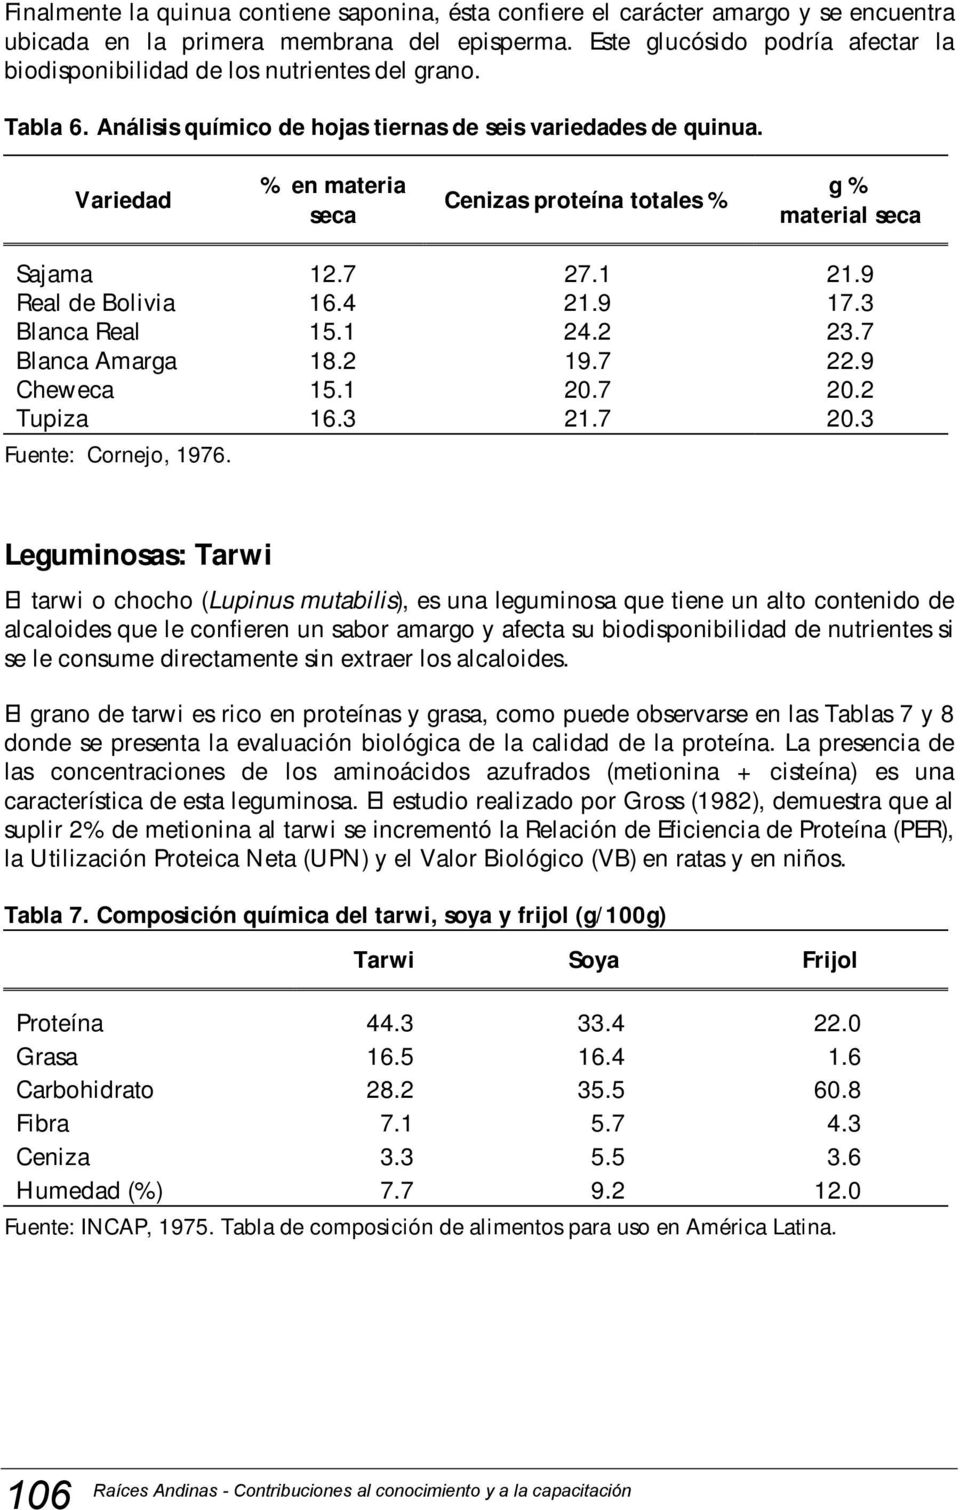 Variedad % en materia seca Cenizas proteína totales % g % material seca Sajama 12.7 27.1 21.9 Real de Bolivia 16.4 21.9 17.3 Blanca Real 15.1 24.2 23.7 Blanca Amarga 18.2 19.7 22.9 Cheweca 15.1 20.